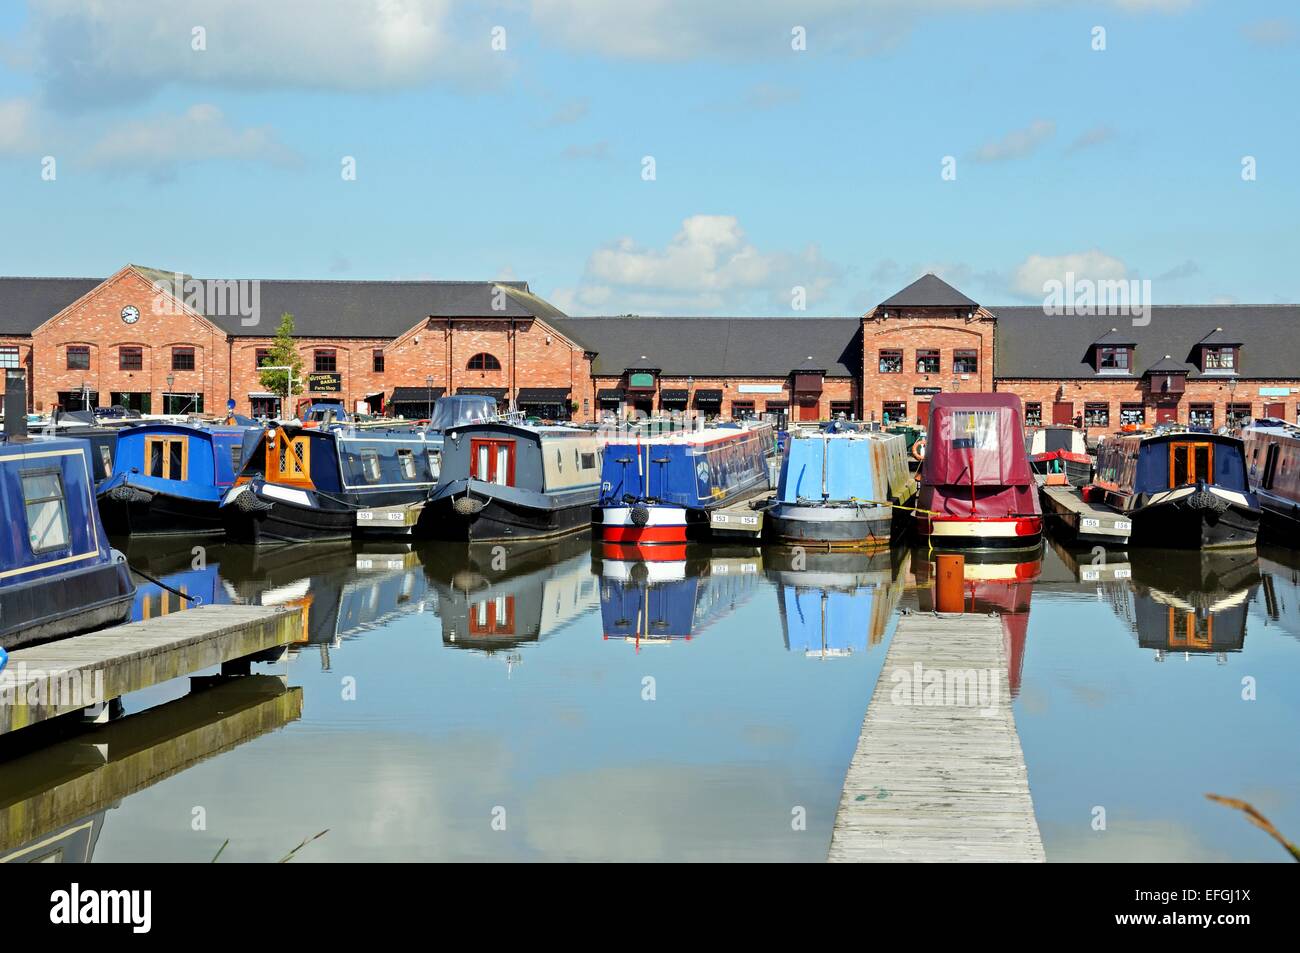 Narrowboats sur leurs amarres dans le bassin du canal, avec des magasins, bars et restaurants à l'arrière, Barton en vertu de Needwood. Banque D'Images